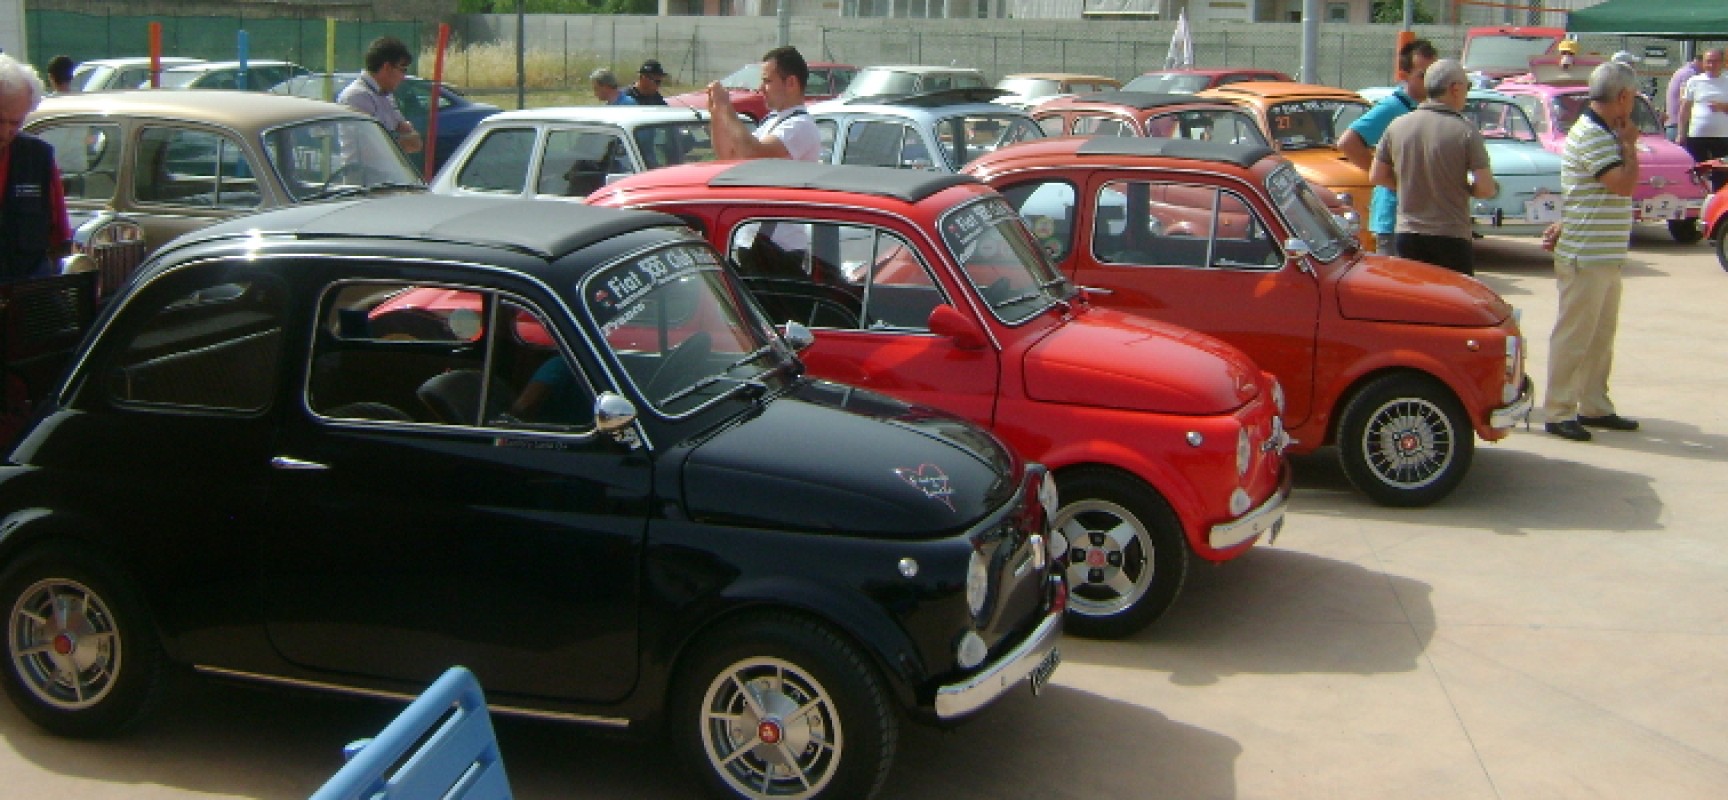 Raduno Nazionale Fiat 500 a Bisceglie, dal 1999 un’emozione che si rinnova